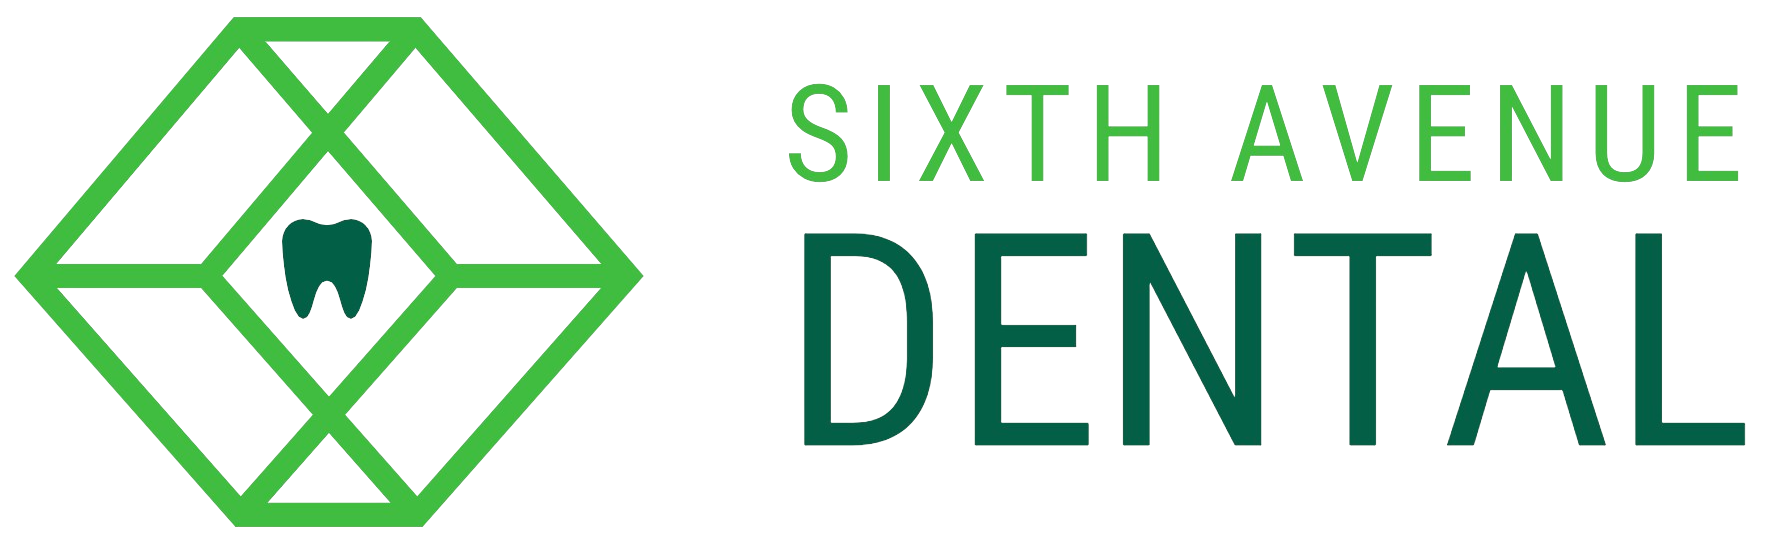 Sixth Avenue Dental Logo